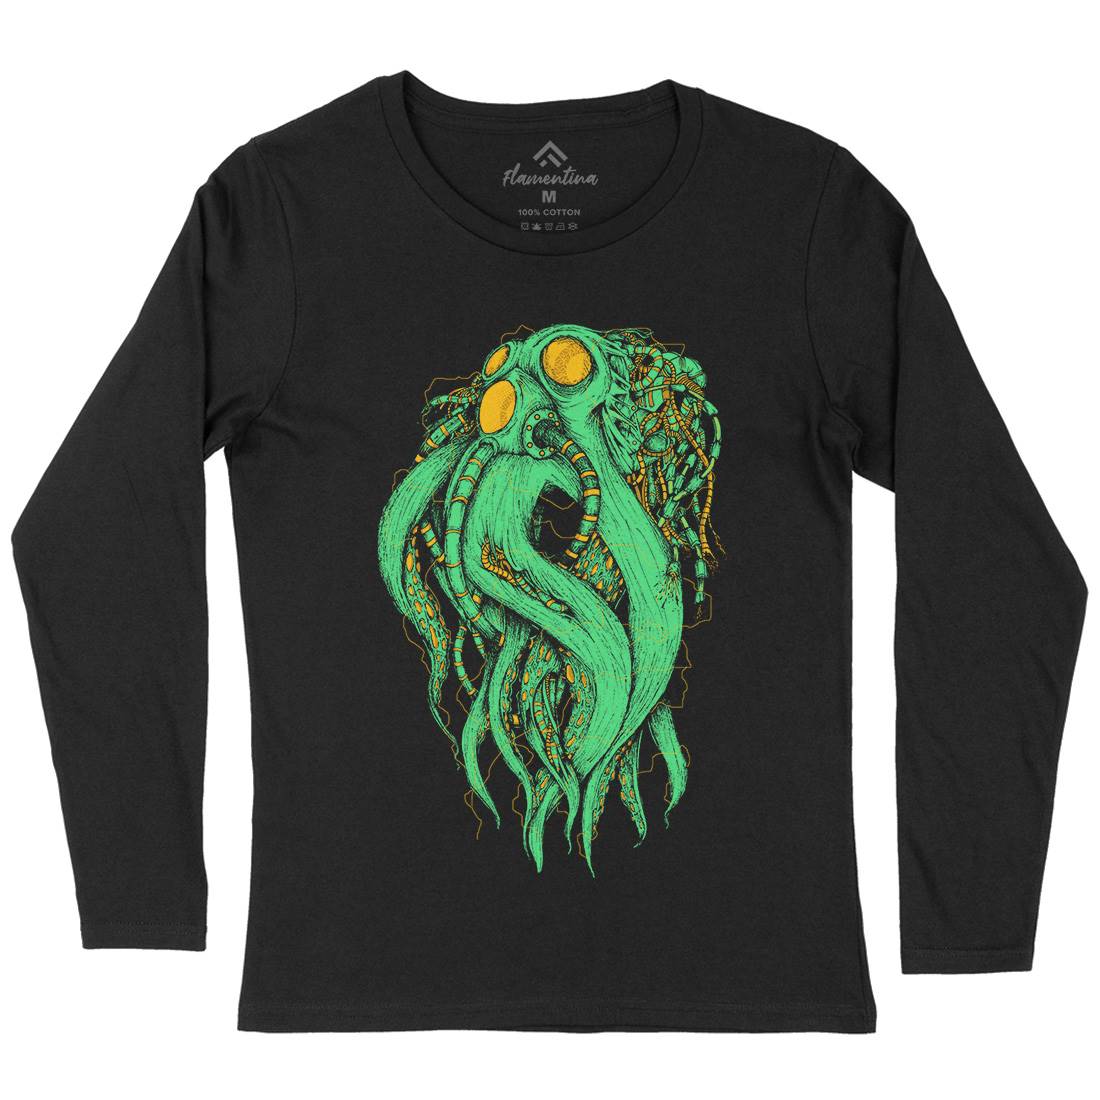 Octopus Robot Womens Long Sleeve T-Shirt Navy D062